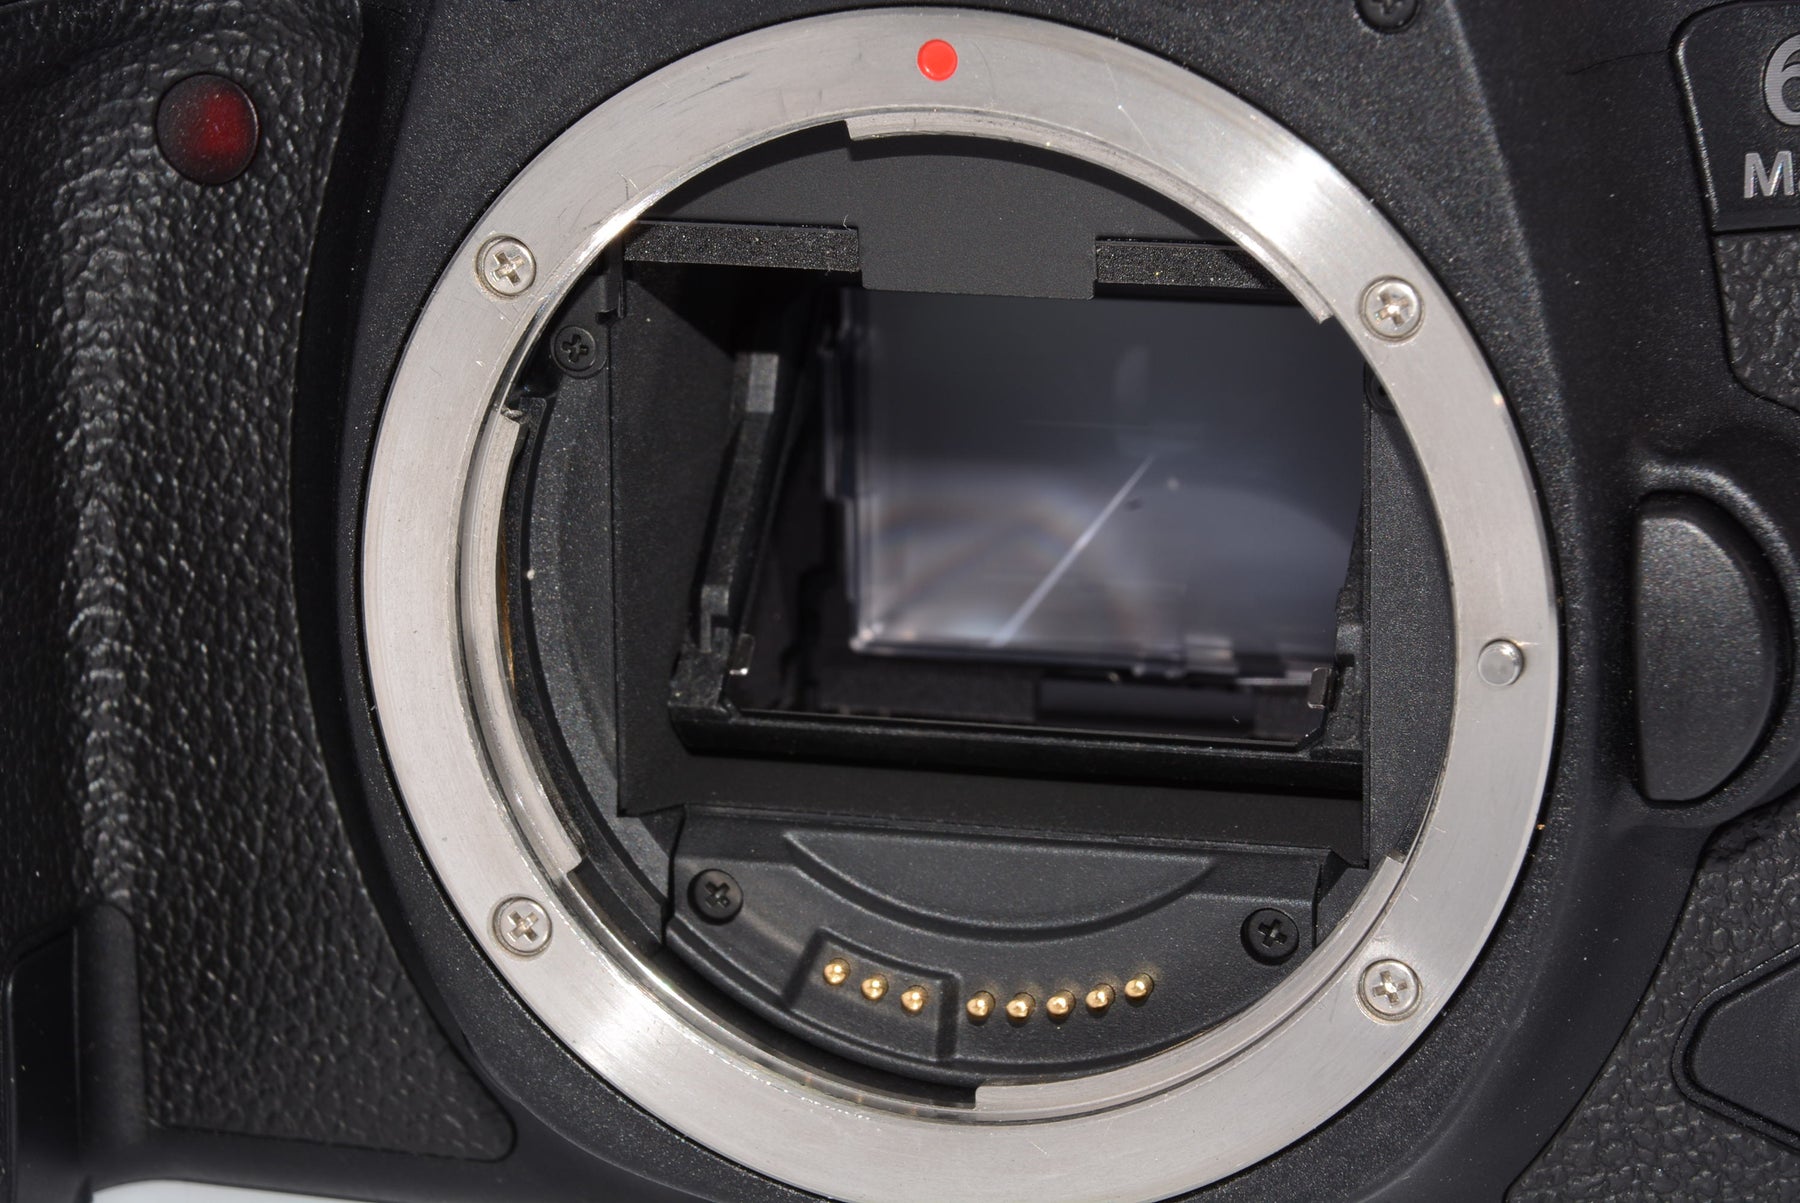 外観特上級】Canon デジタル一眼レフカメラ EOS 6D Mark II ボディー EOS6DMK2